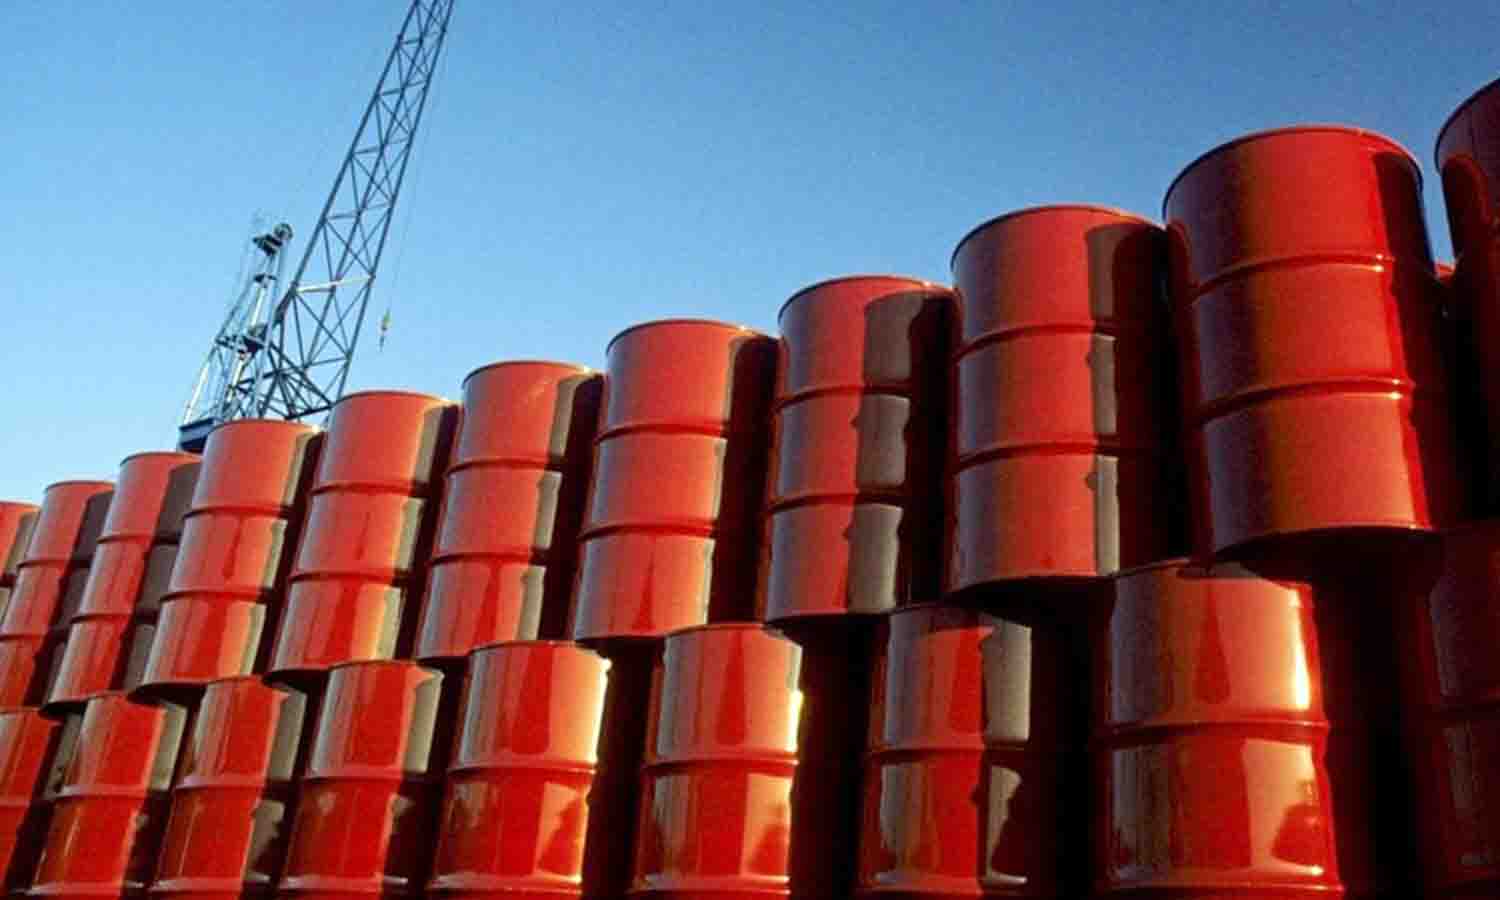 Producción de petróleo venezolano subió ligeramente - noticias24 Carabobo